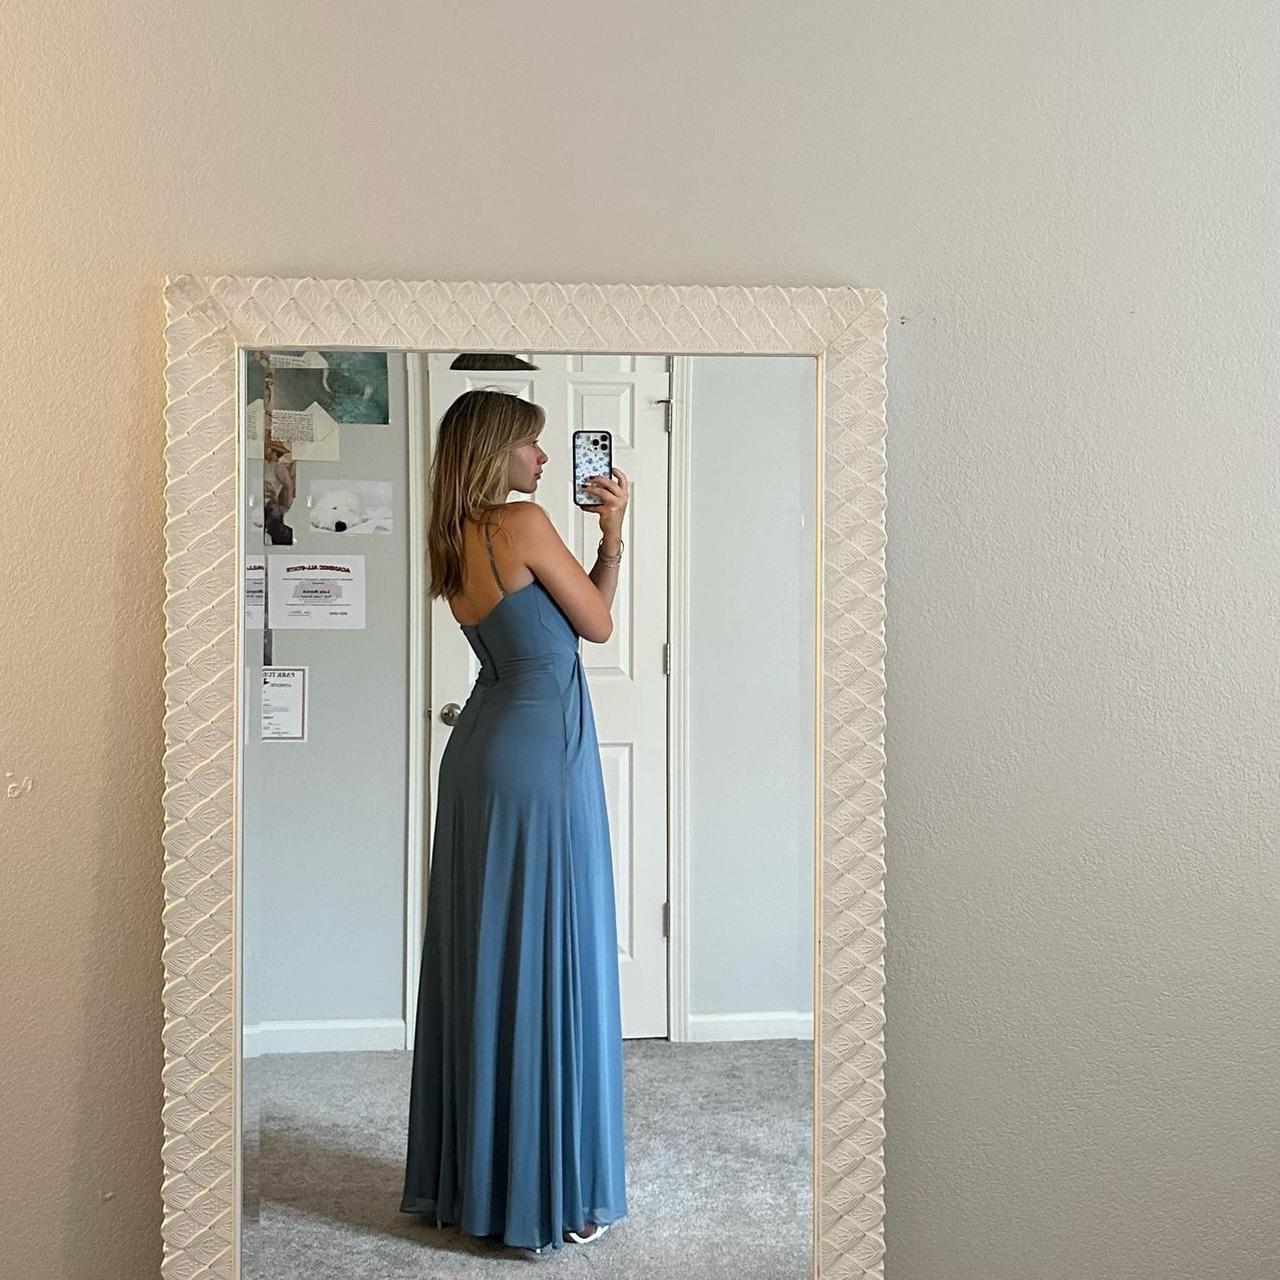 MORILEE slate blue chiffon formal dress with side... - Depop